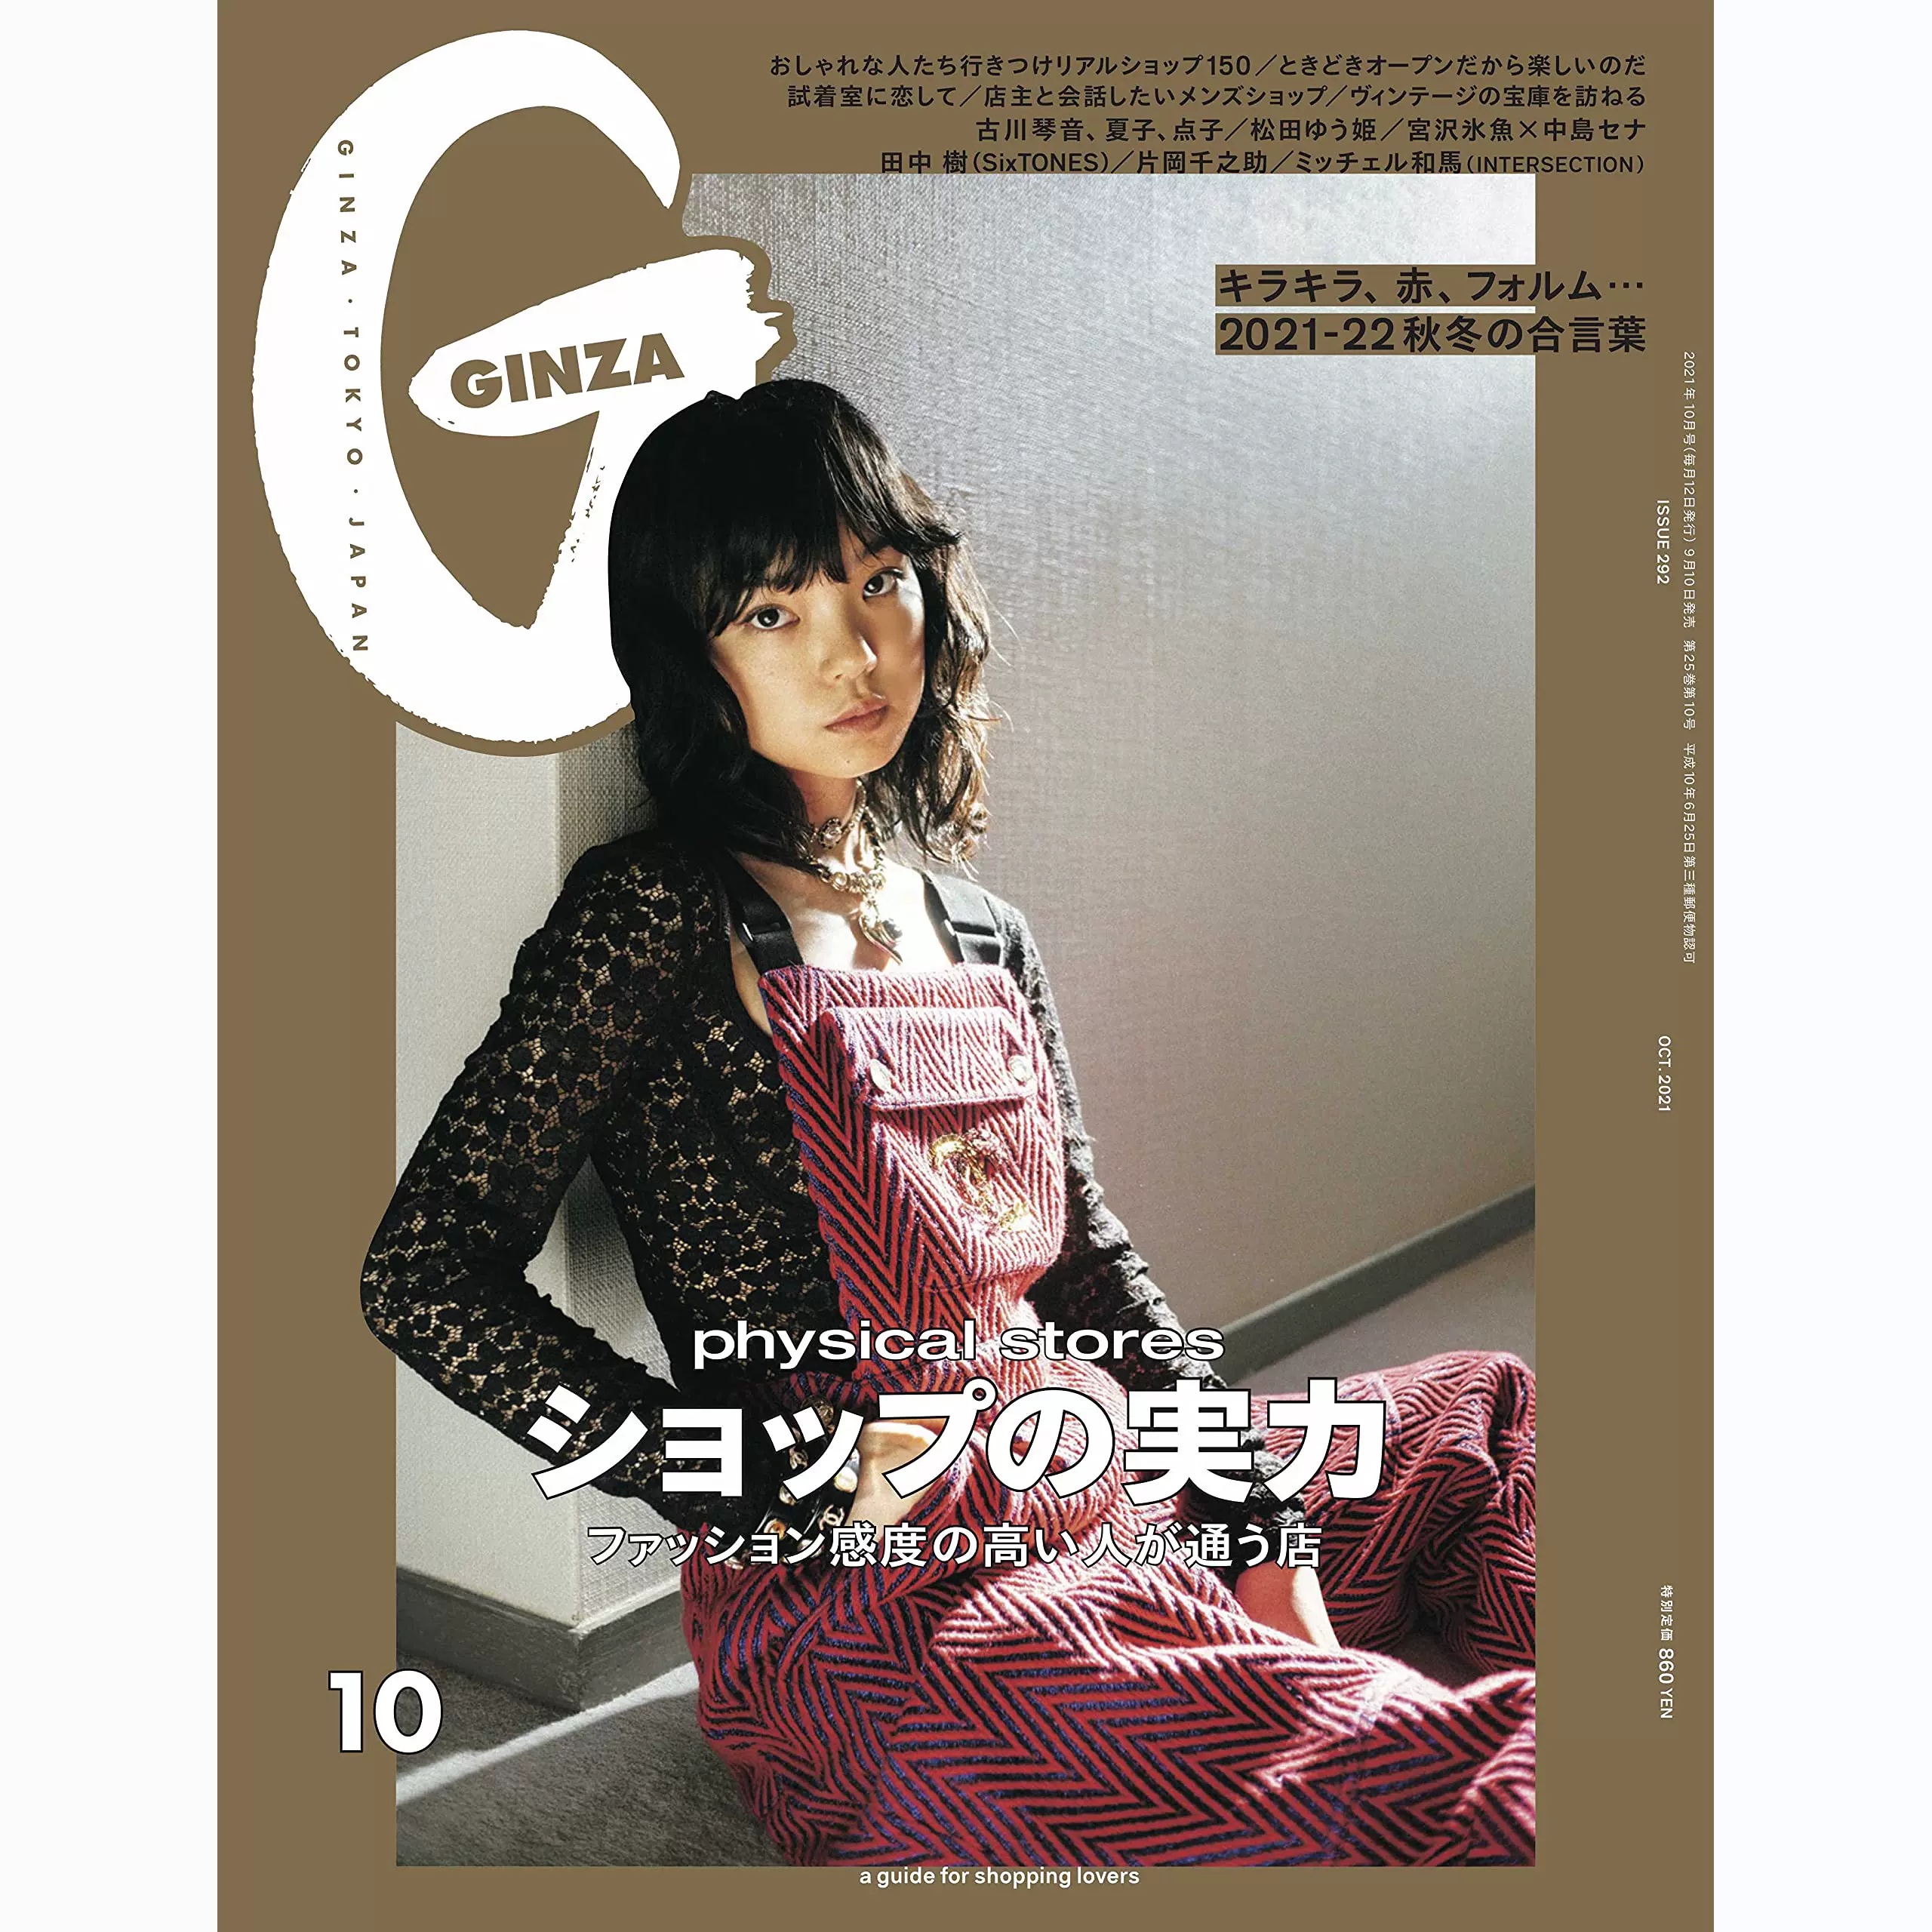 三浦春馬 GINZA ギンザ 2016年3月号 靴とバッグとアクセサリー 雑誌 